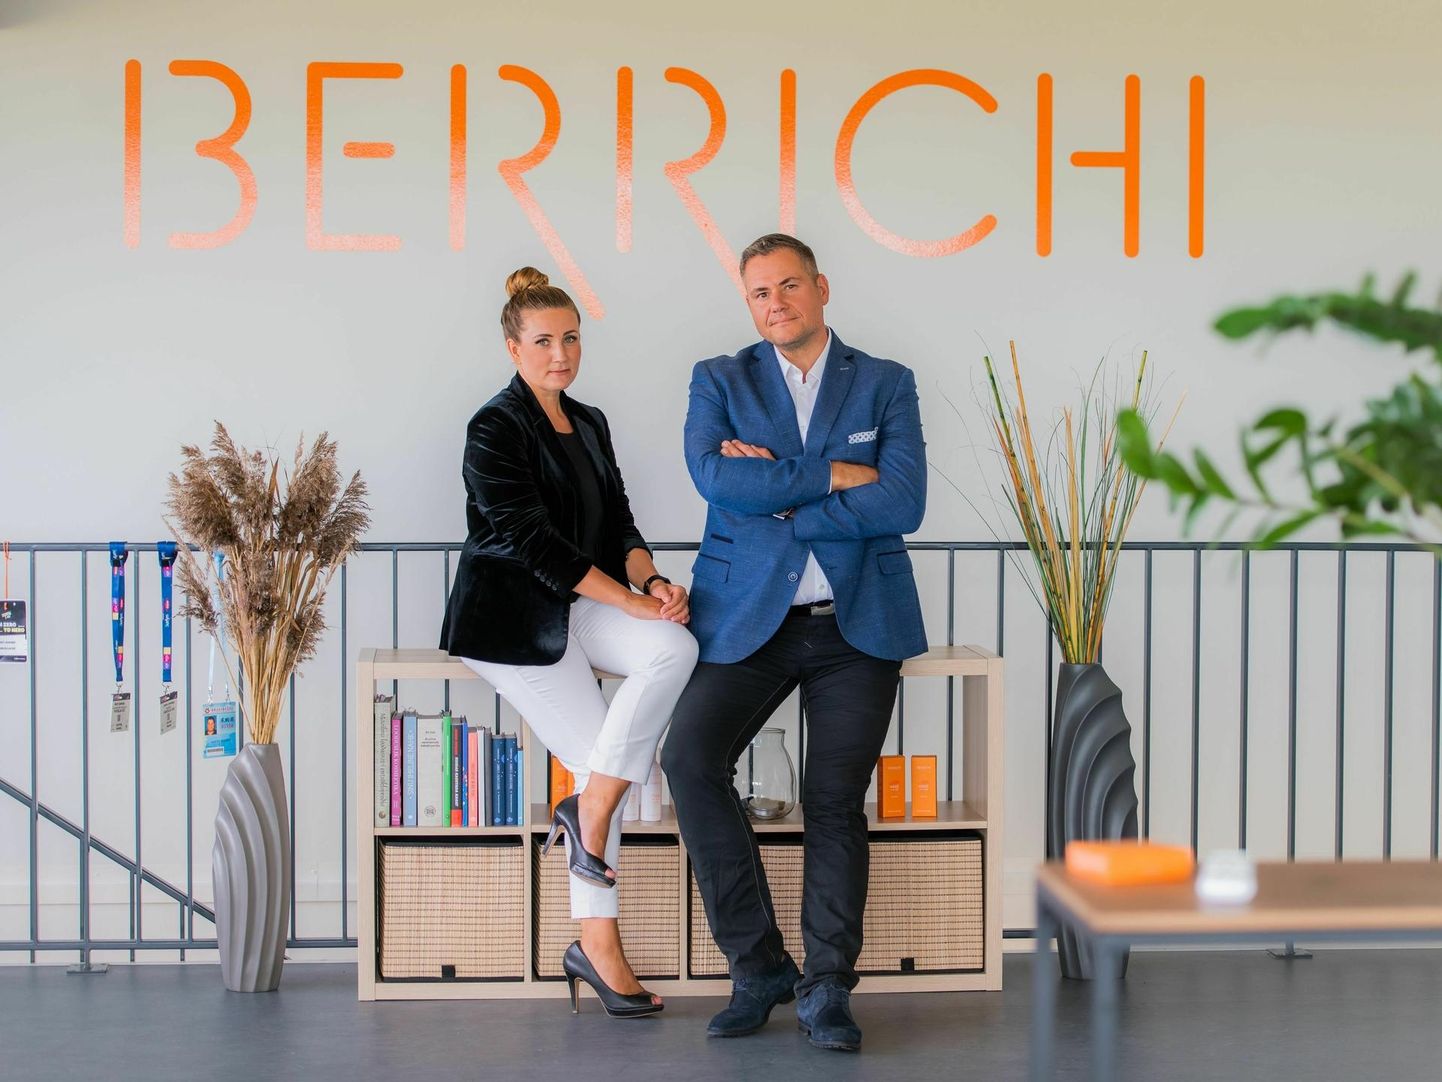 Viljandimaalt pärit Berit ja Janno Joosep astusid kuue aasta eest kosmeetikatööstusse ning pärast teadusuuringuid hakkasid tootma Berrichi nime kandvaid kreeme.